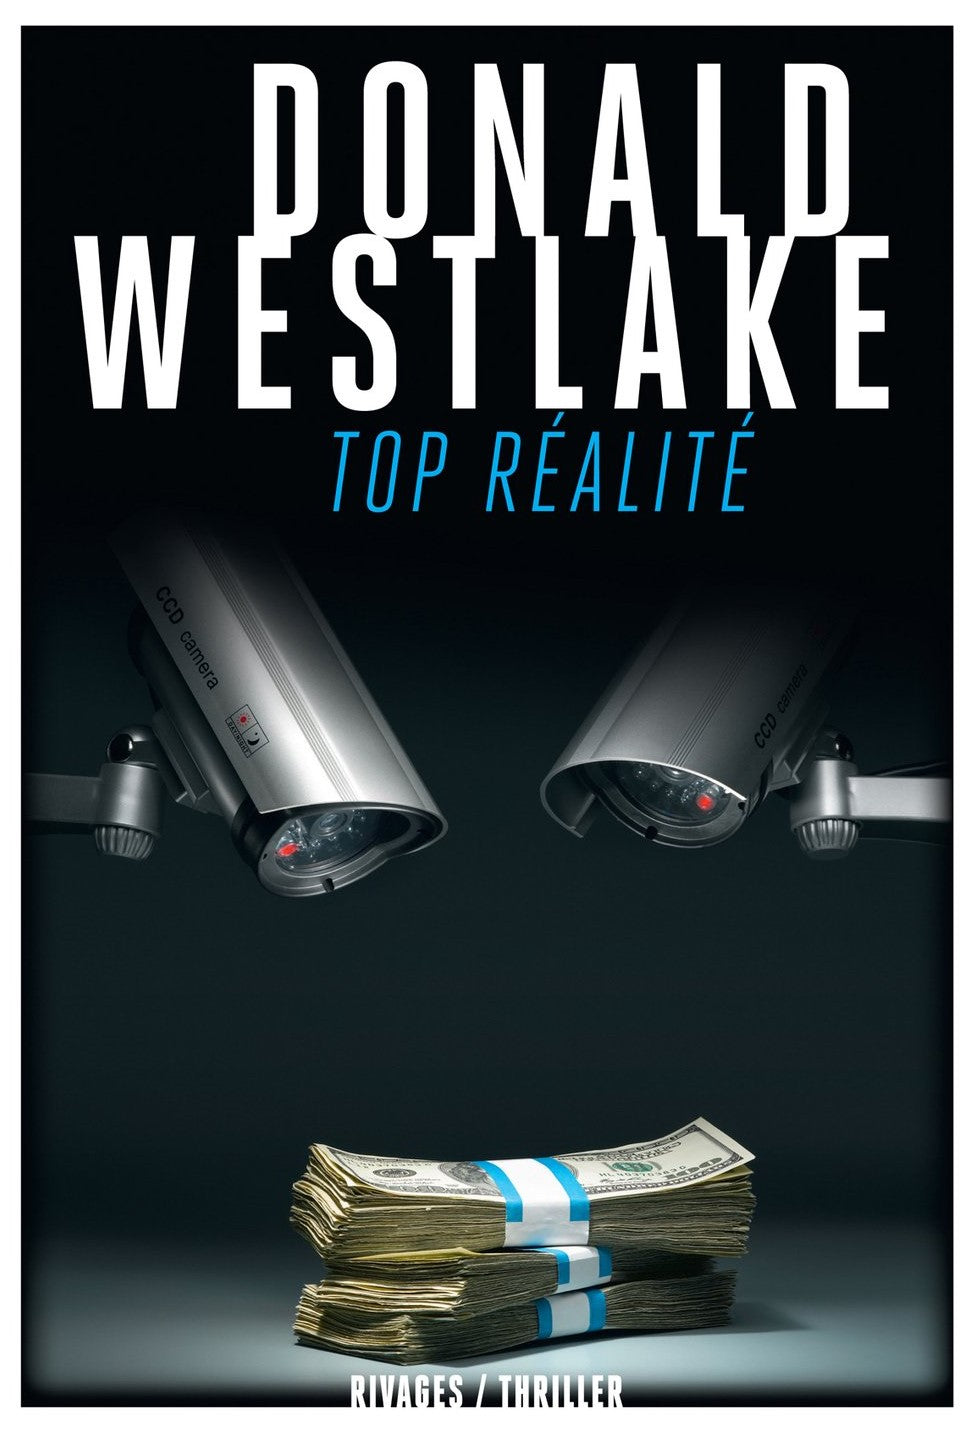 Top réalité - Donald Westlake